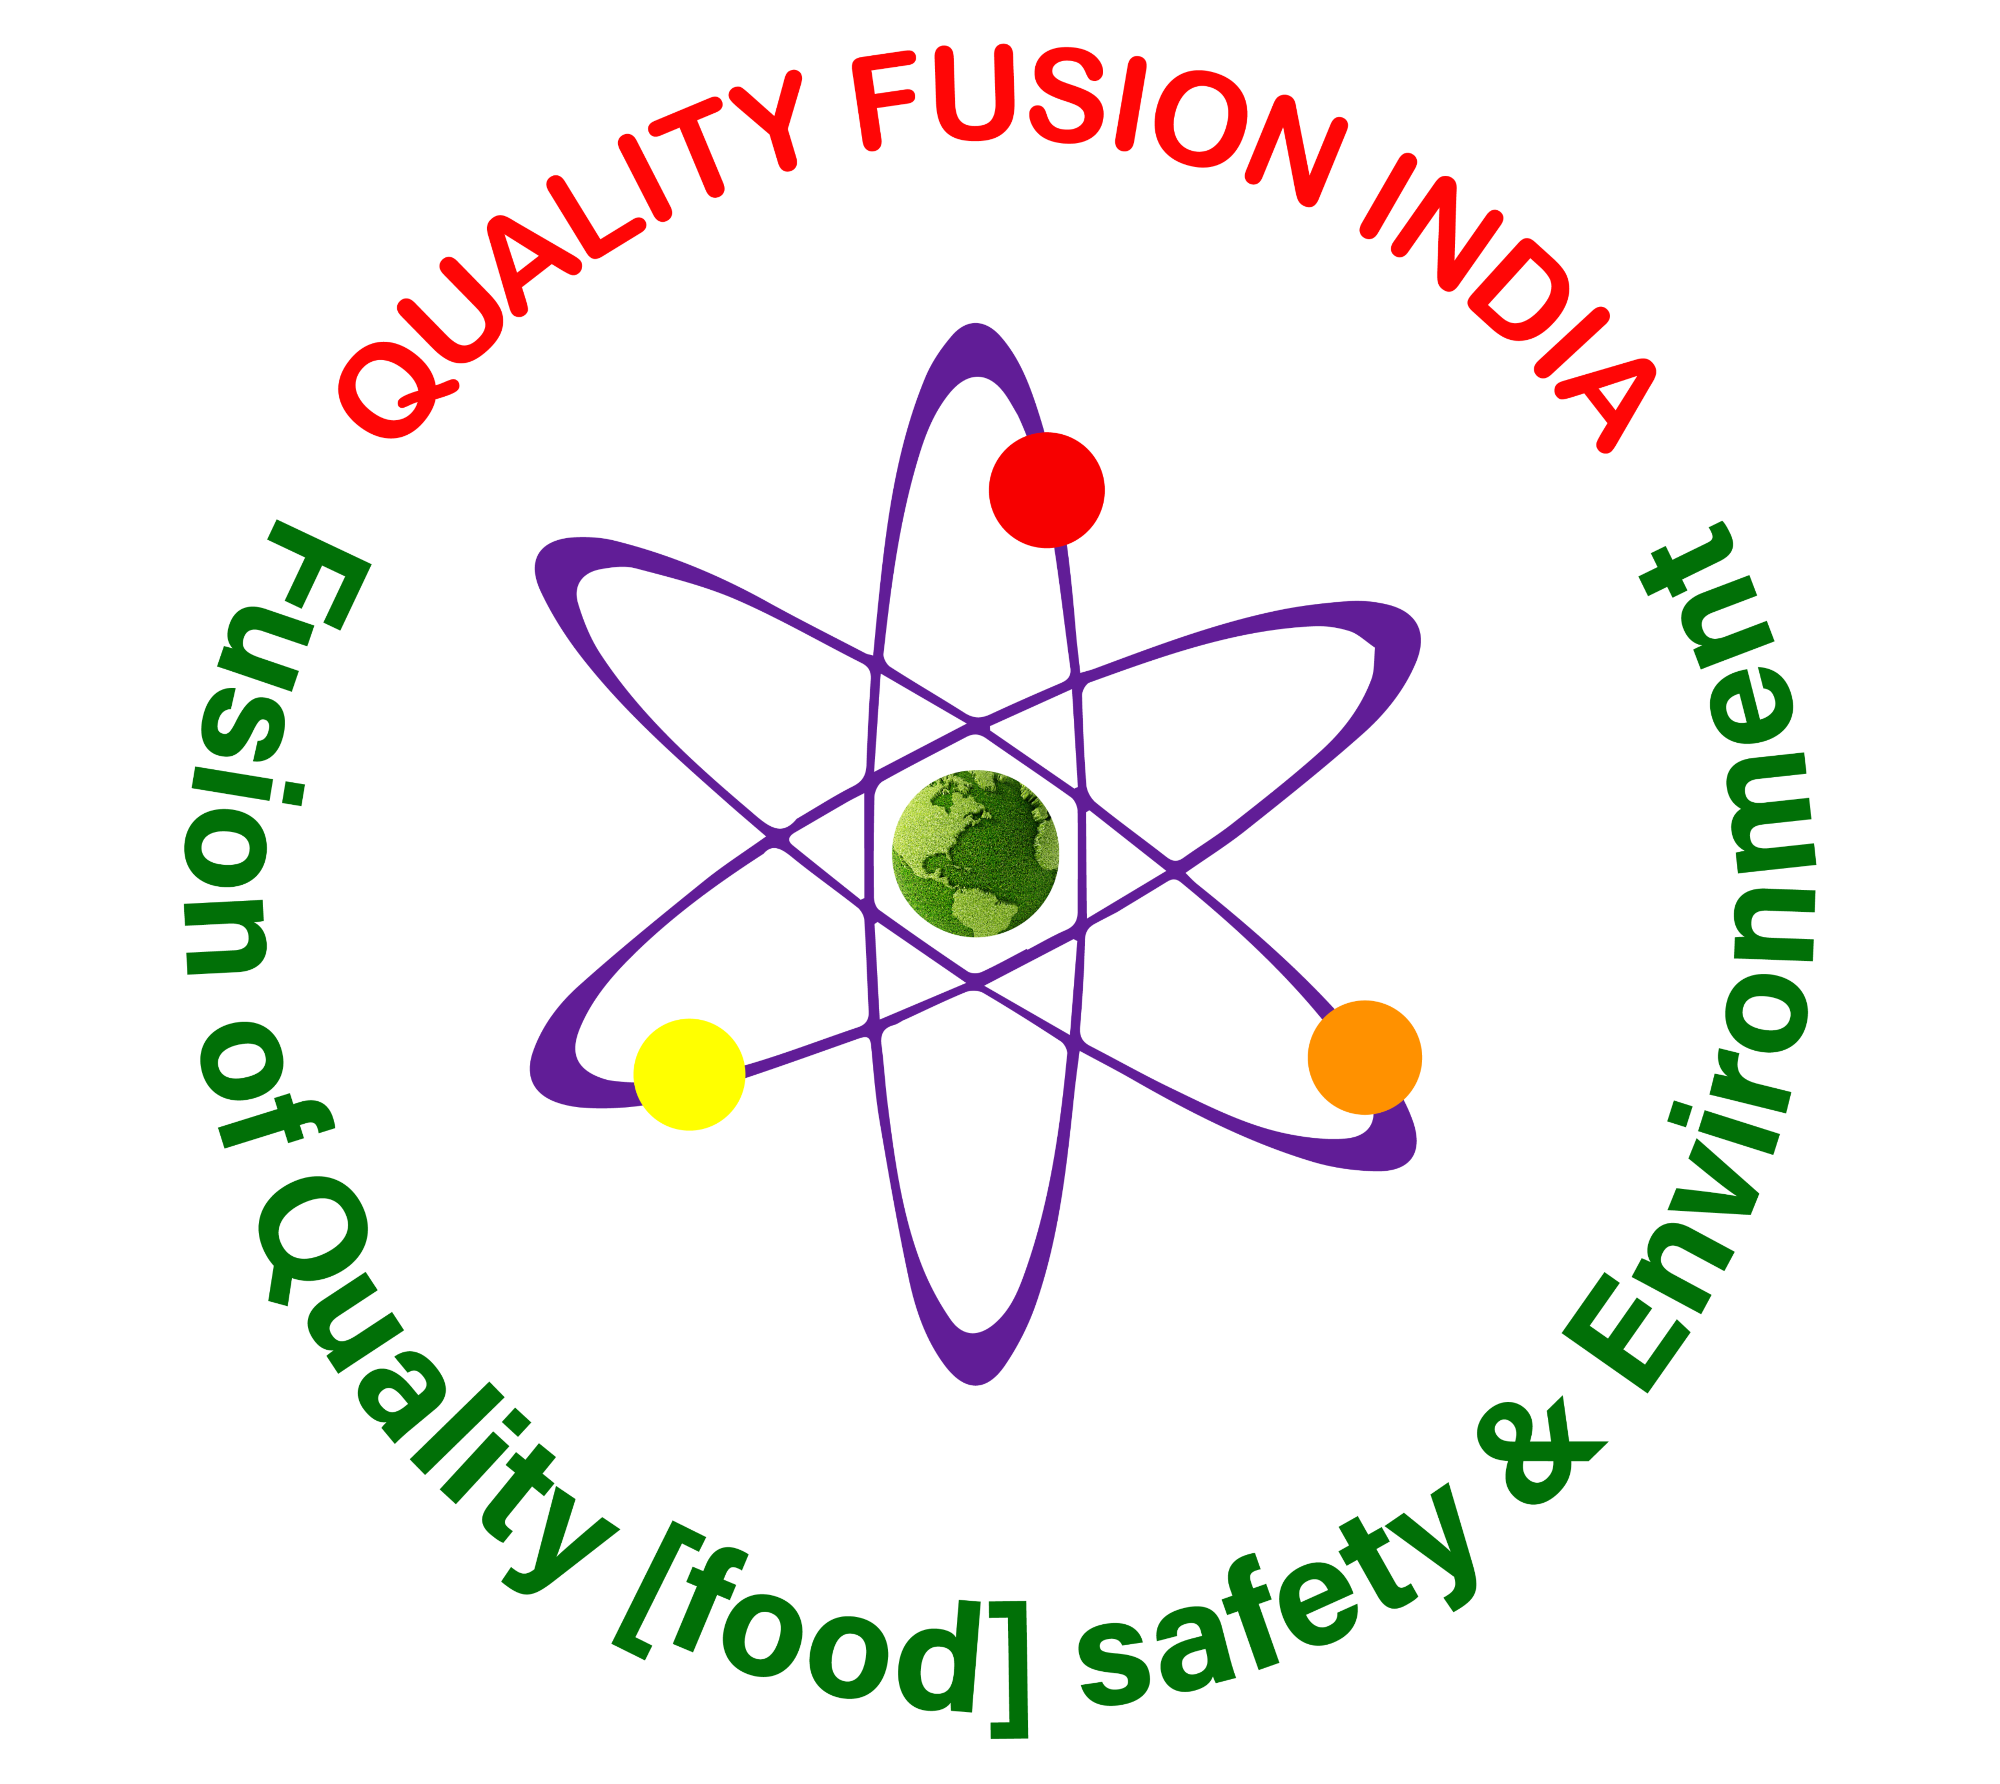 Quality Fusion India